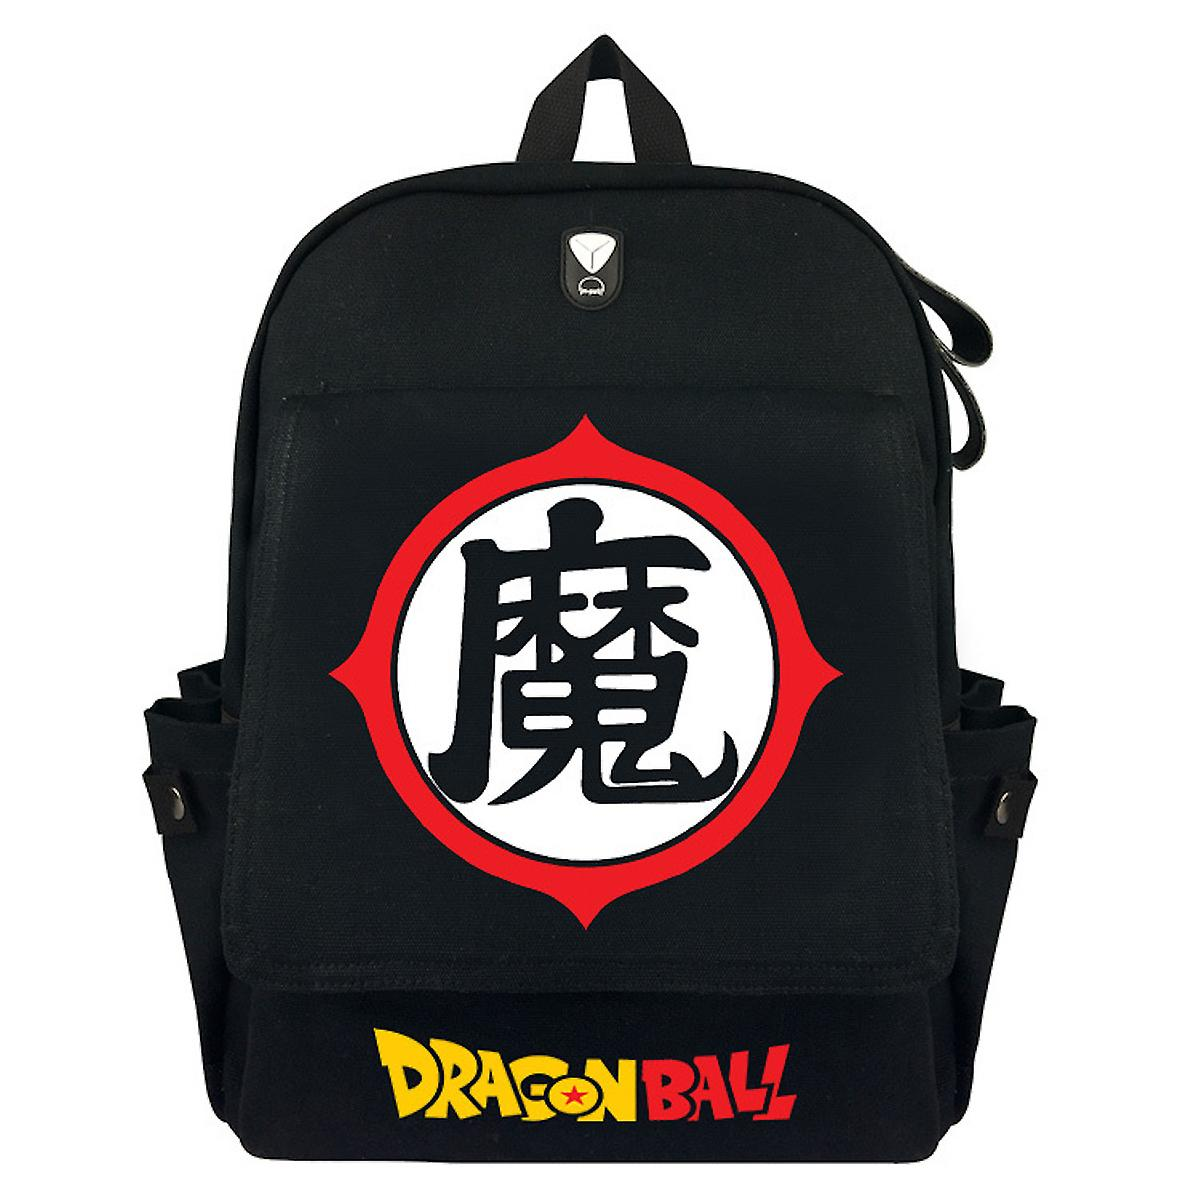 Dragon Ball Z Shoulder Bag Black Canvas Backpack Anime School Bag For Students (Black)